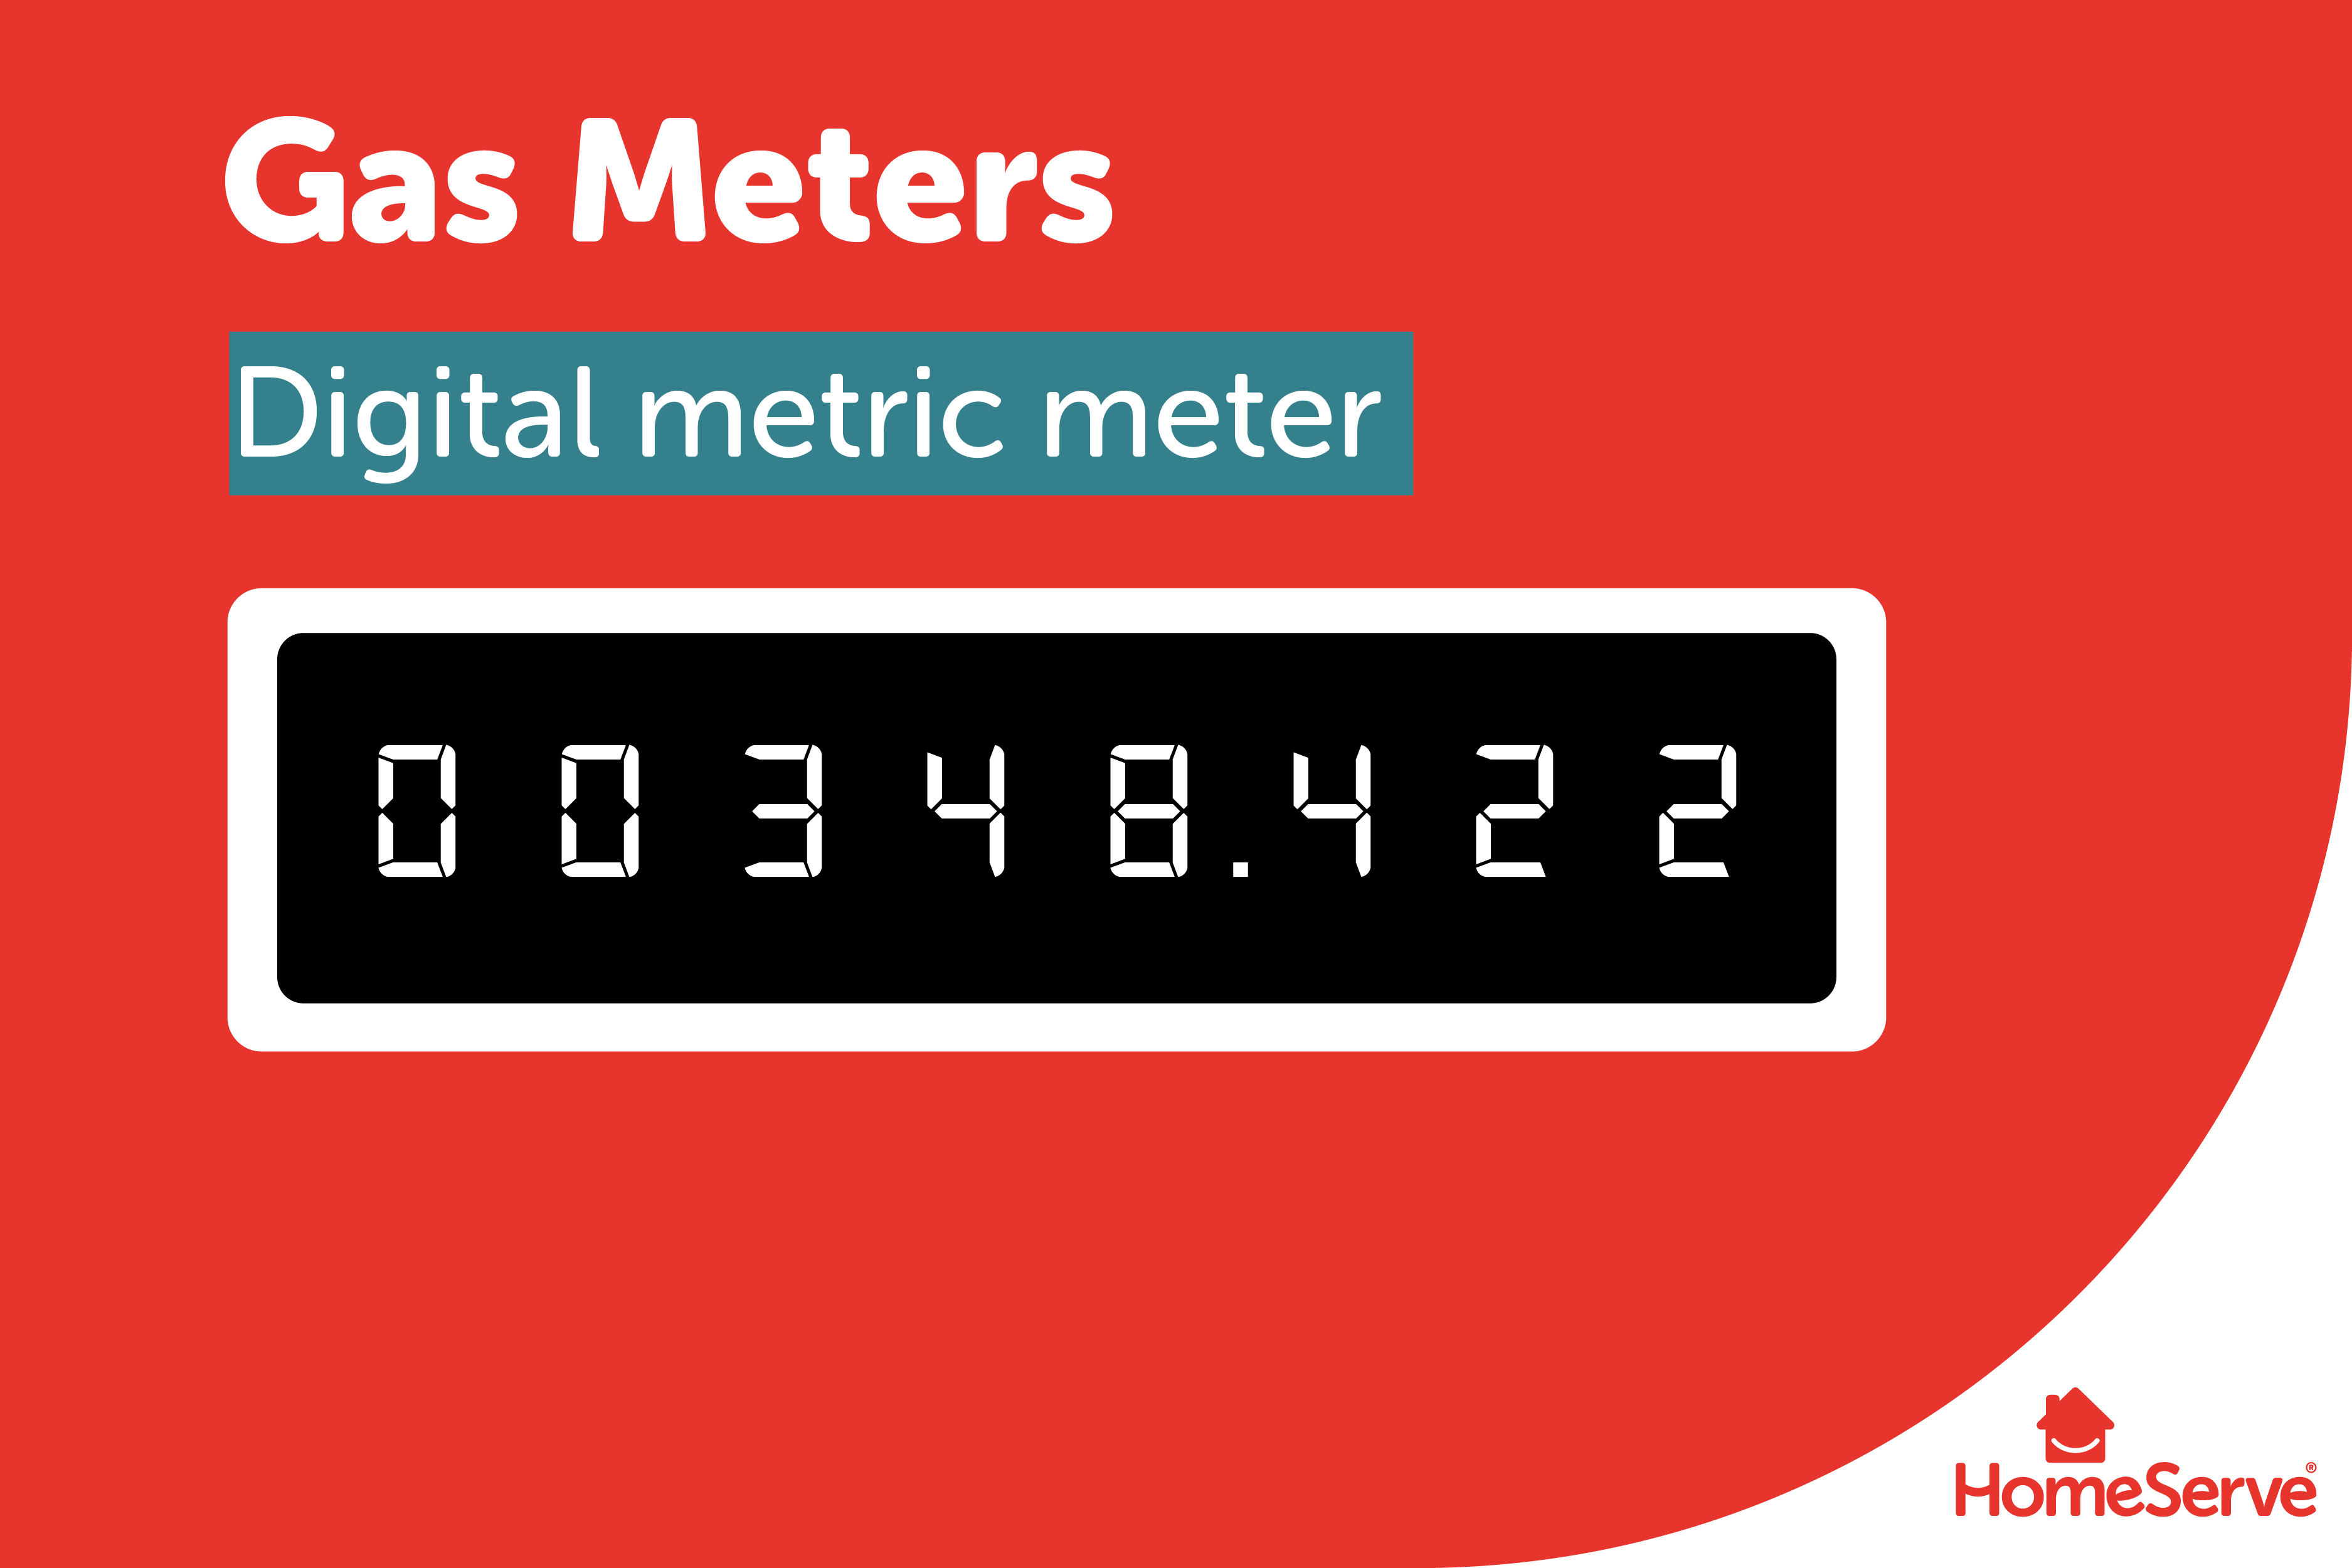 Diagram of a metric gas meter